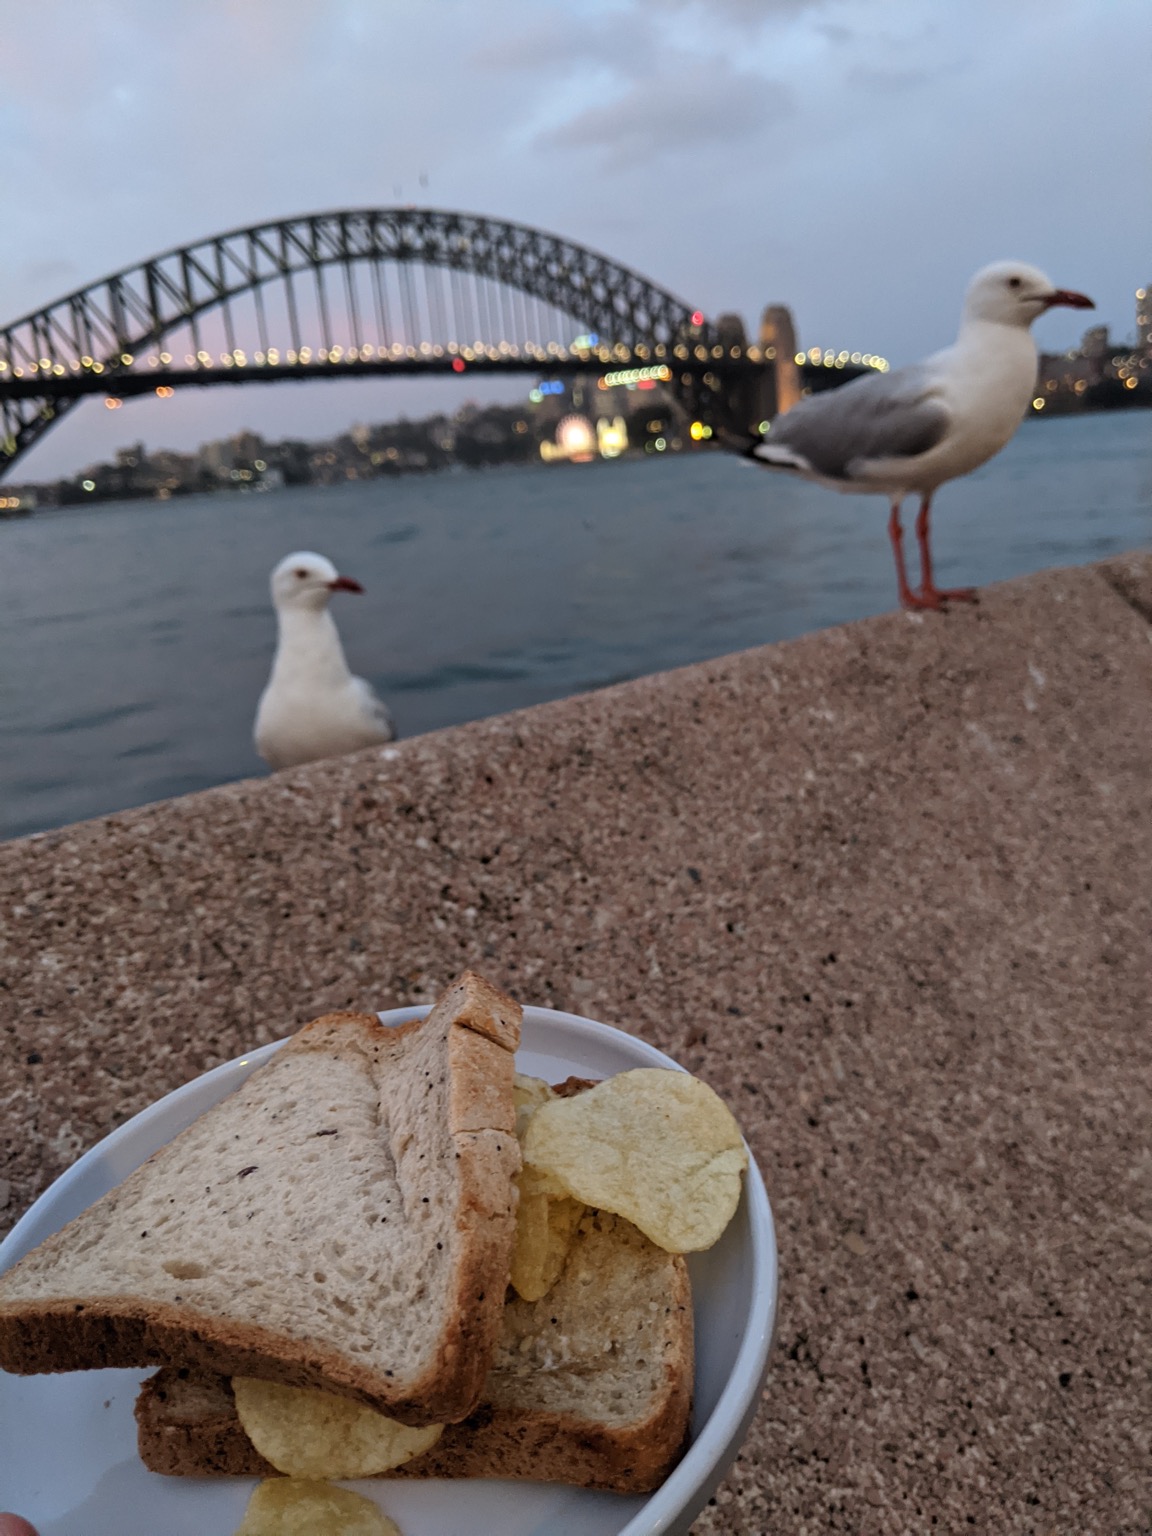 Crisp sandwich with seagulls and Sydney Harbour Bridge